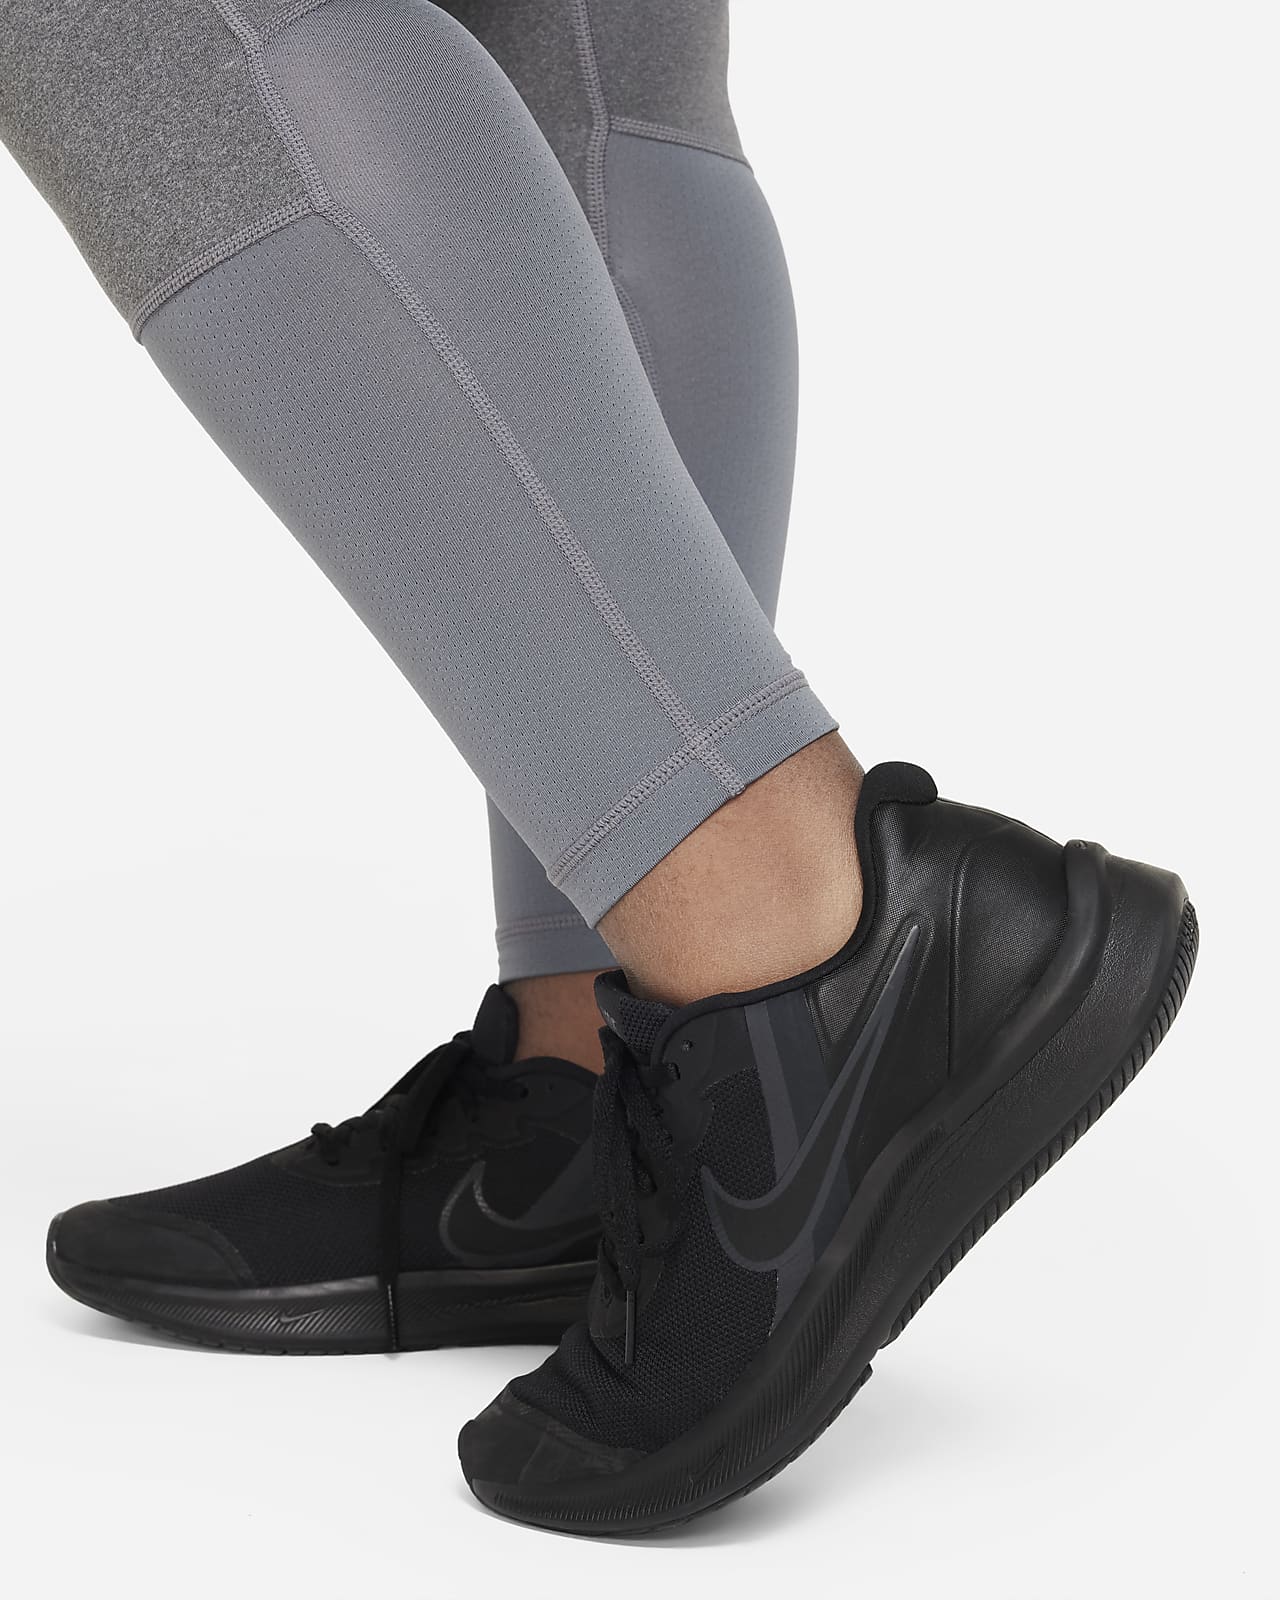 Nike Older Girls Pro Leggings - Black